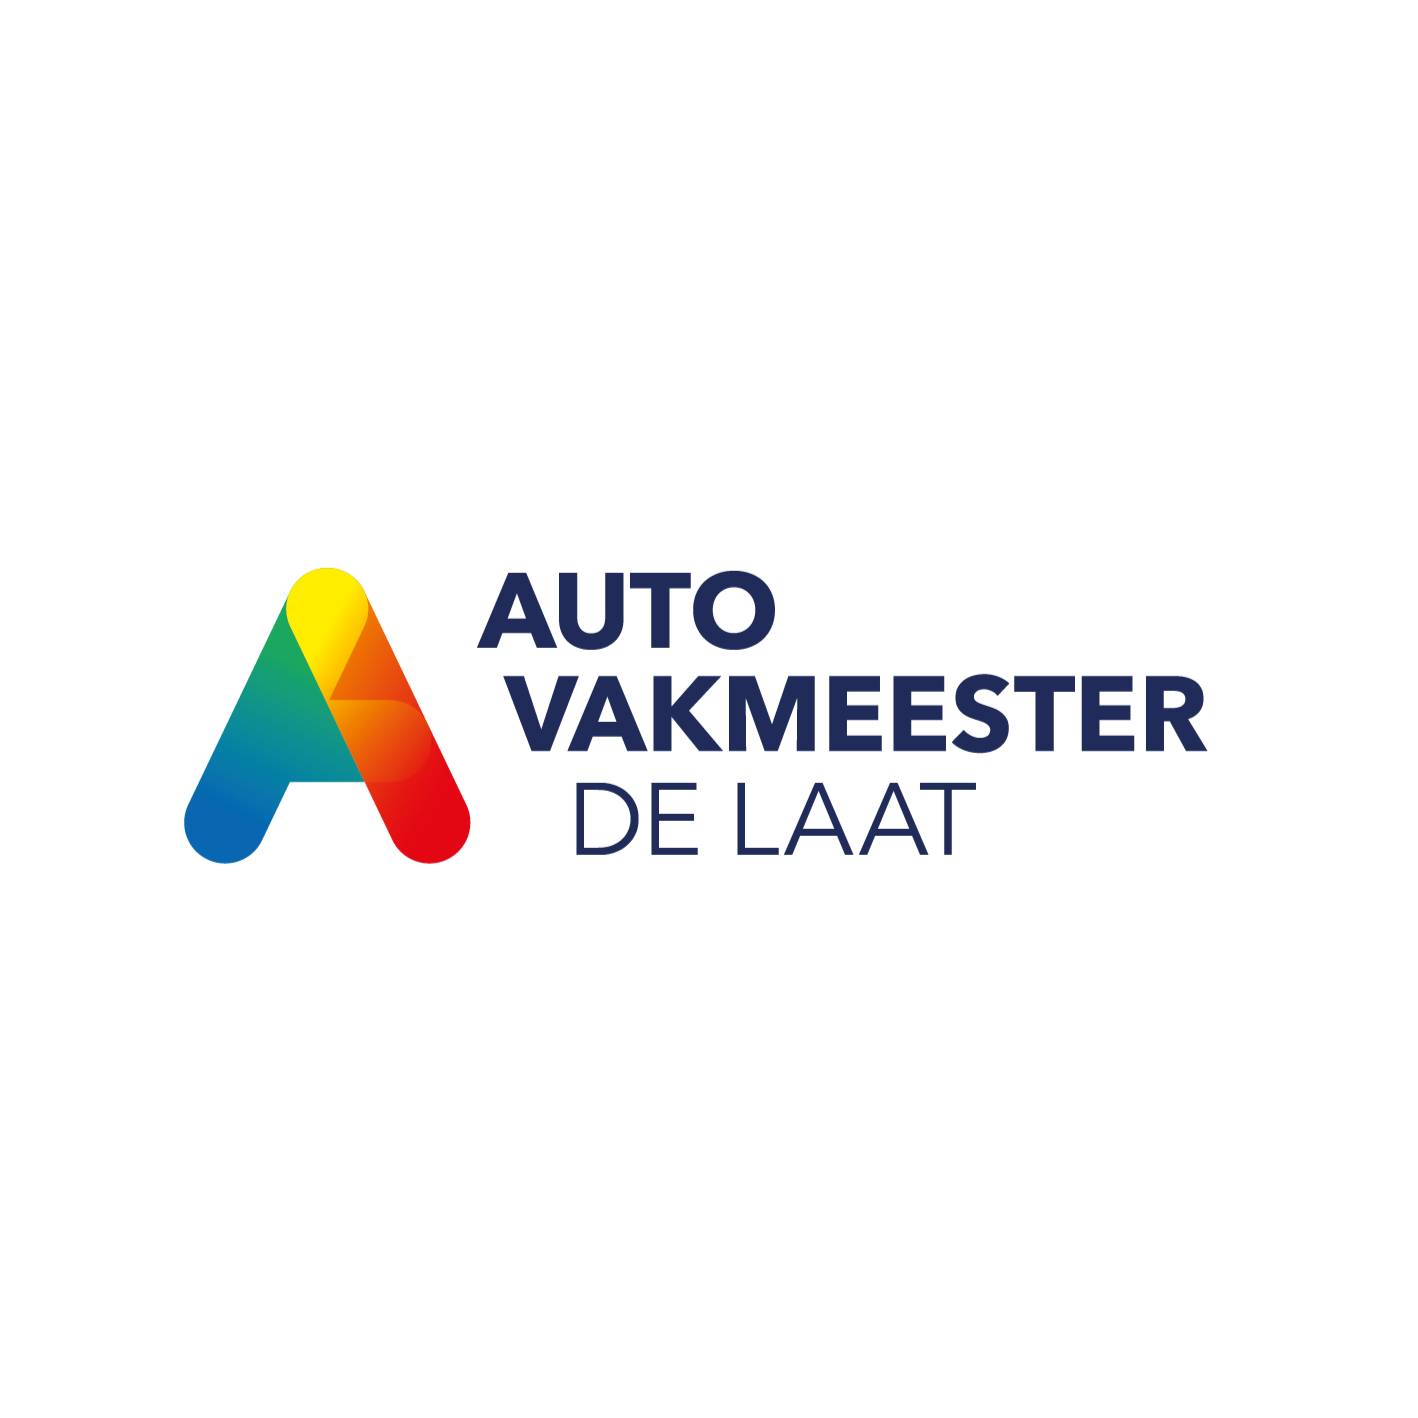 Autobedrijf de Laat | Autovakmeester Logo